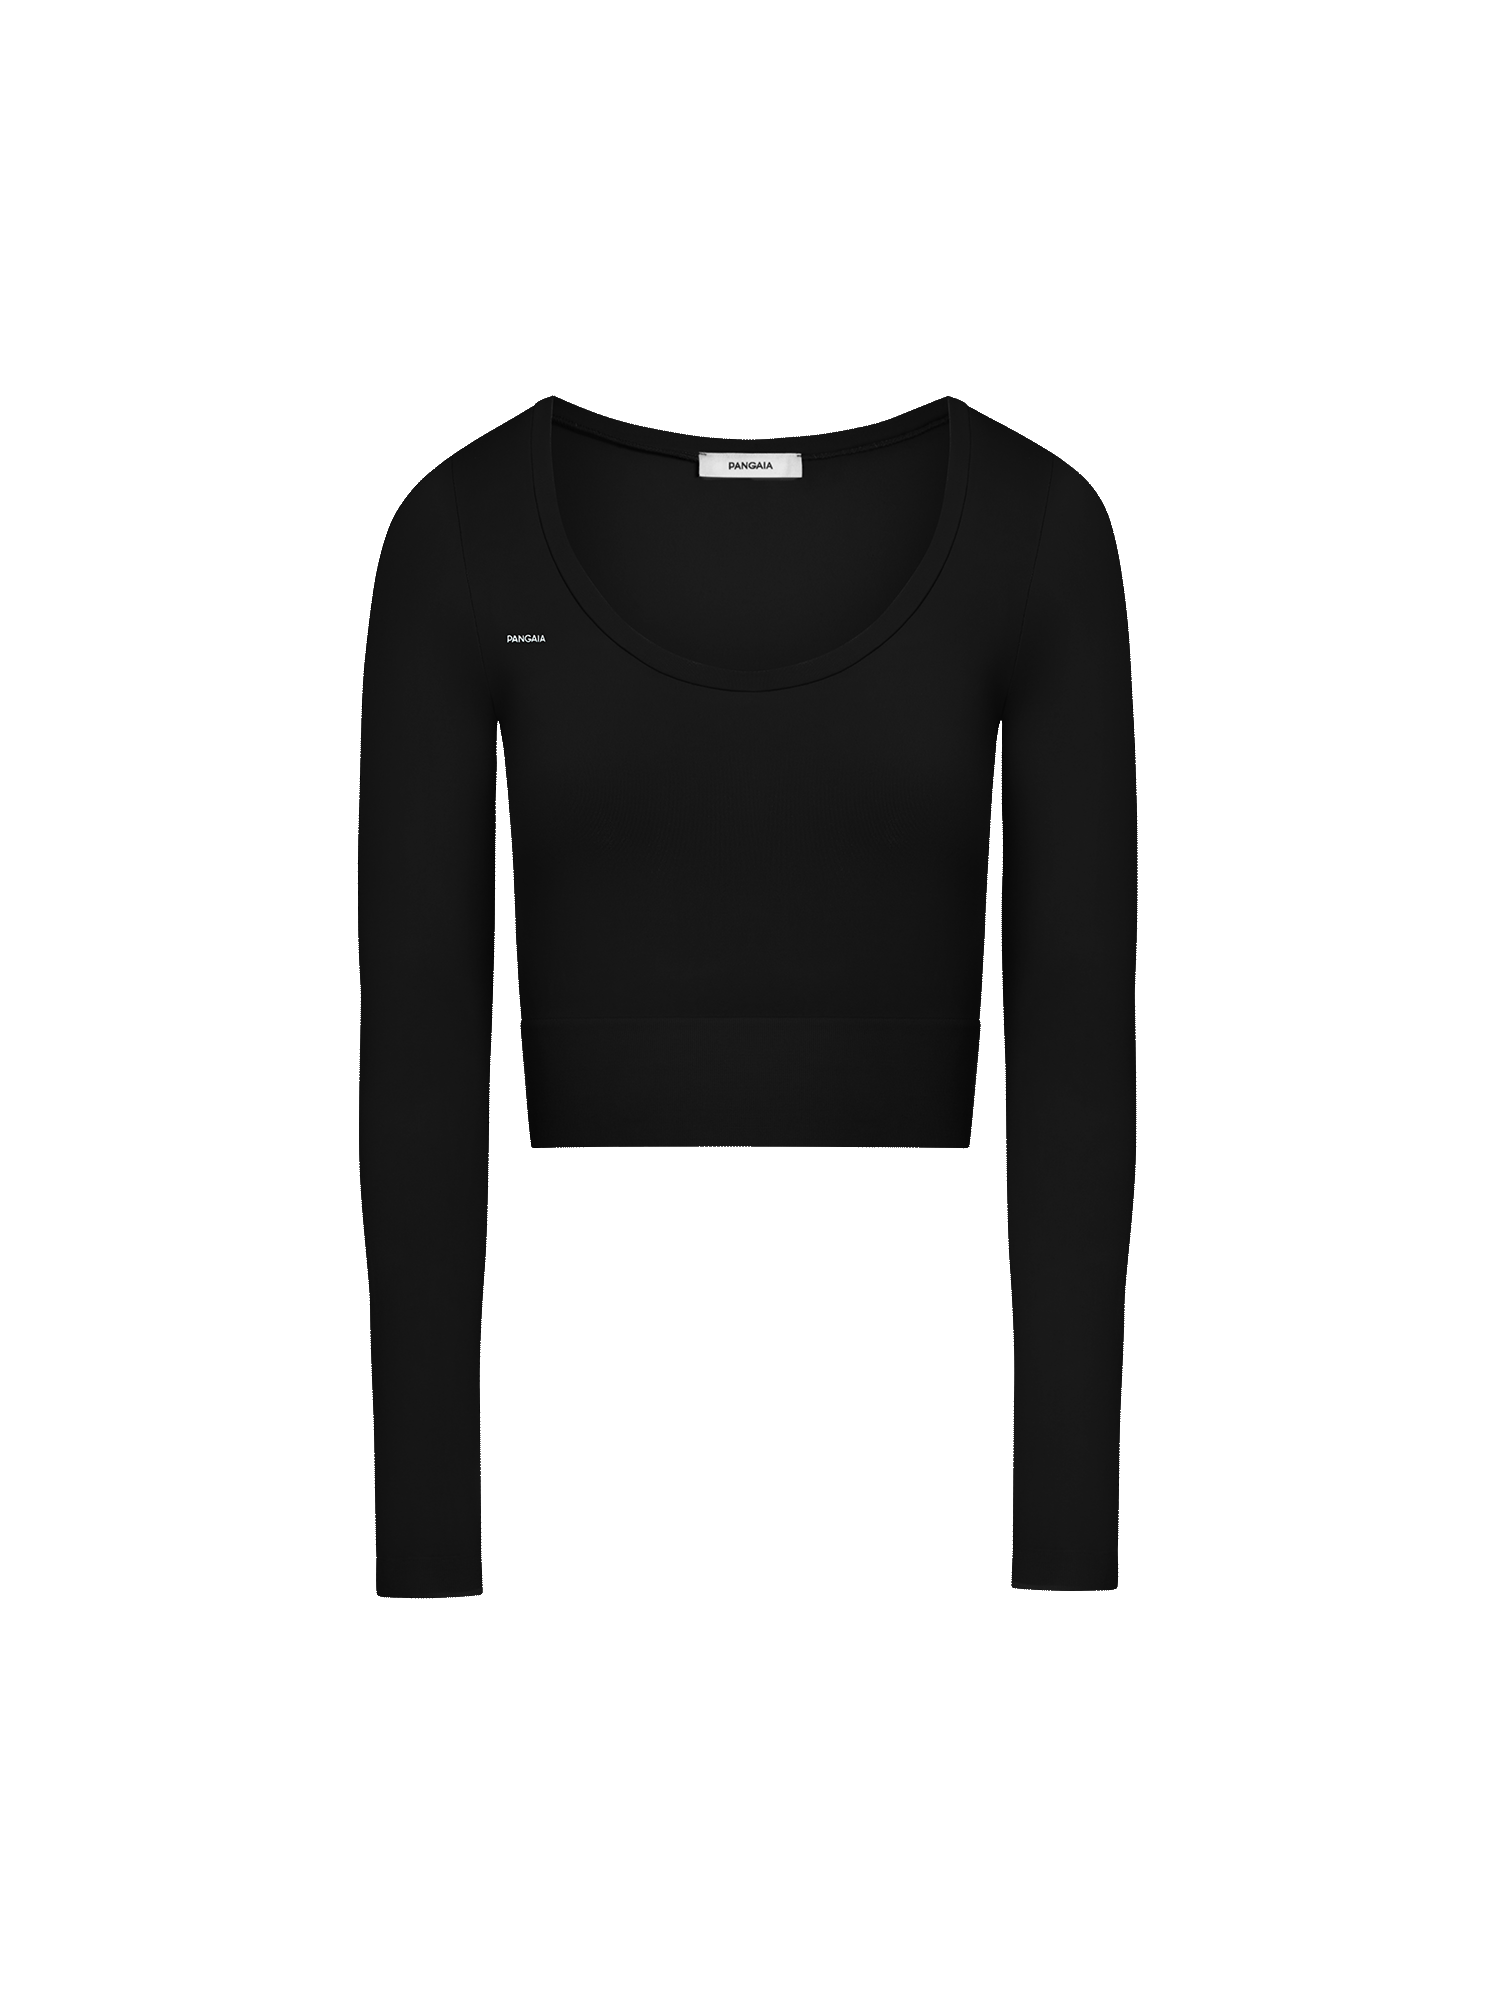 Activewear-3-0-Long-Sleeve-Crop-Top-Black-packshot-3